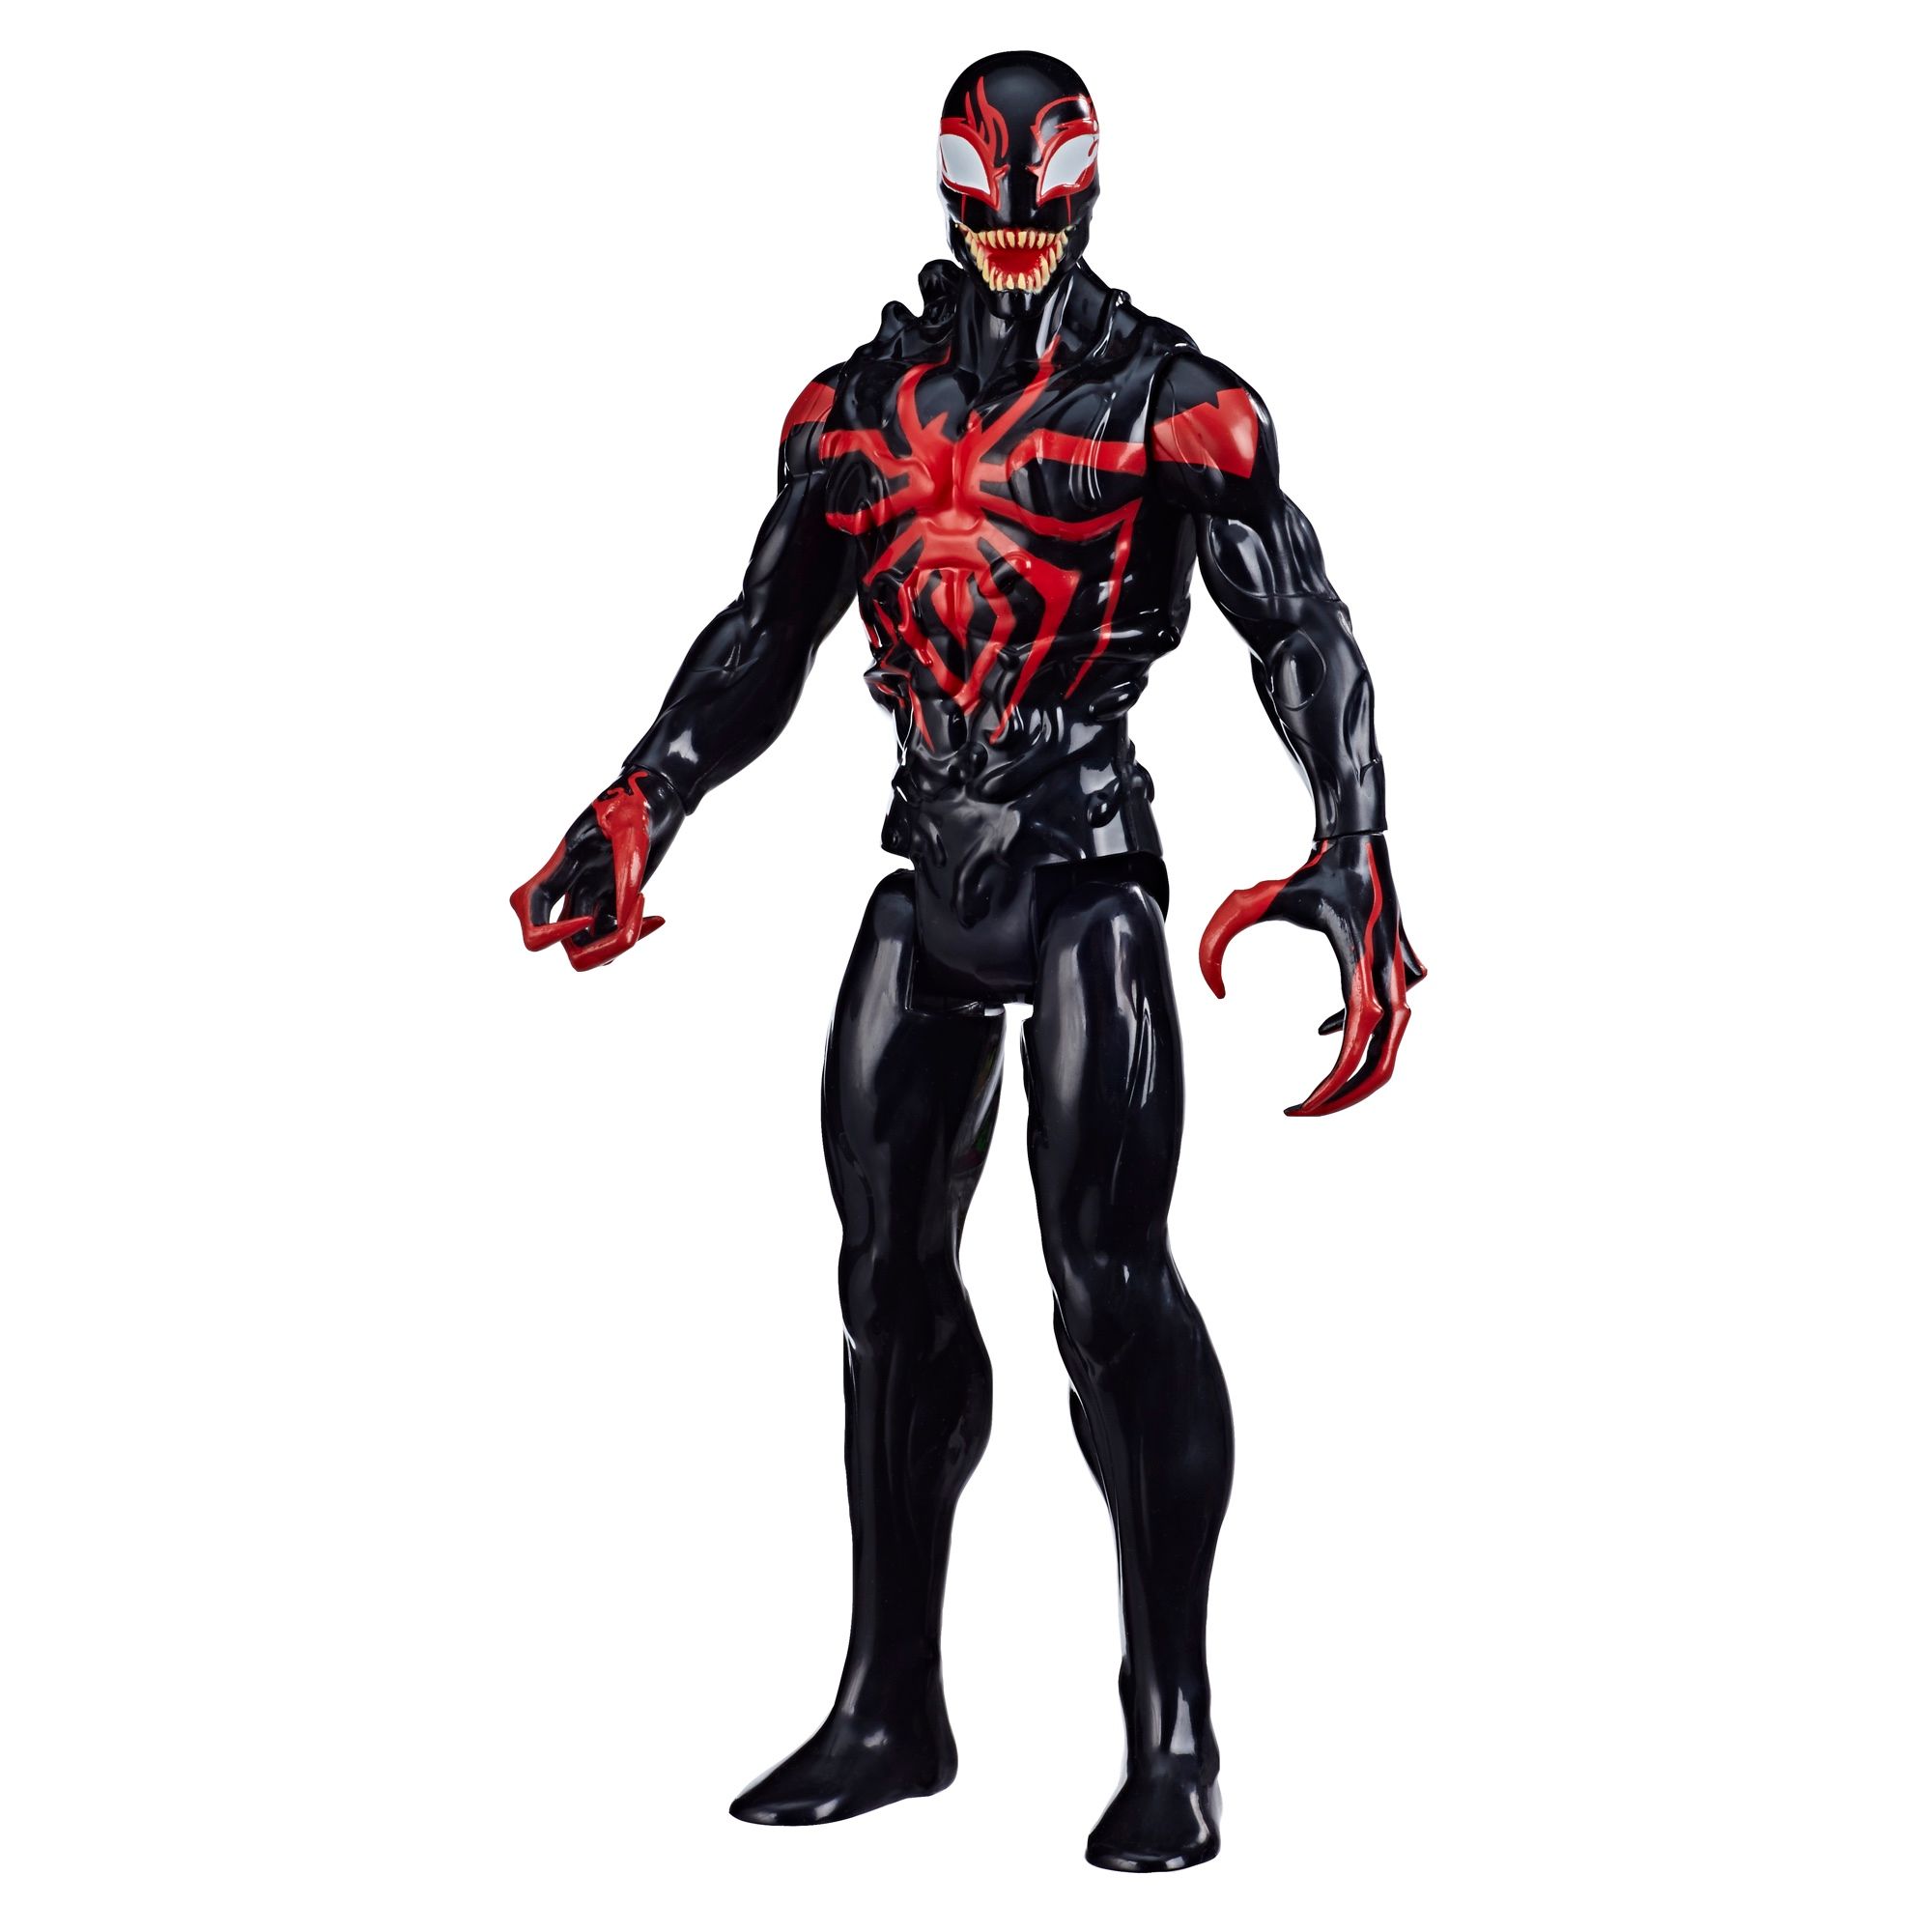 Hasbro Unveils New SpiderMan Maximum Venom Toys [EXCLUSIVE]